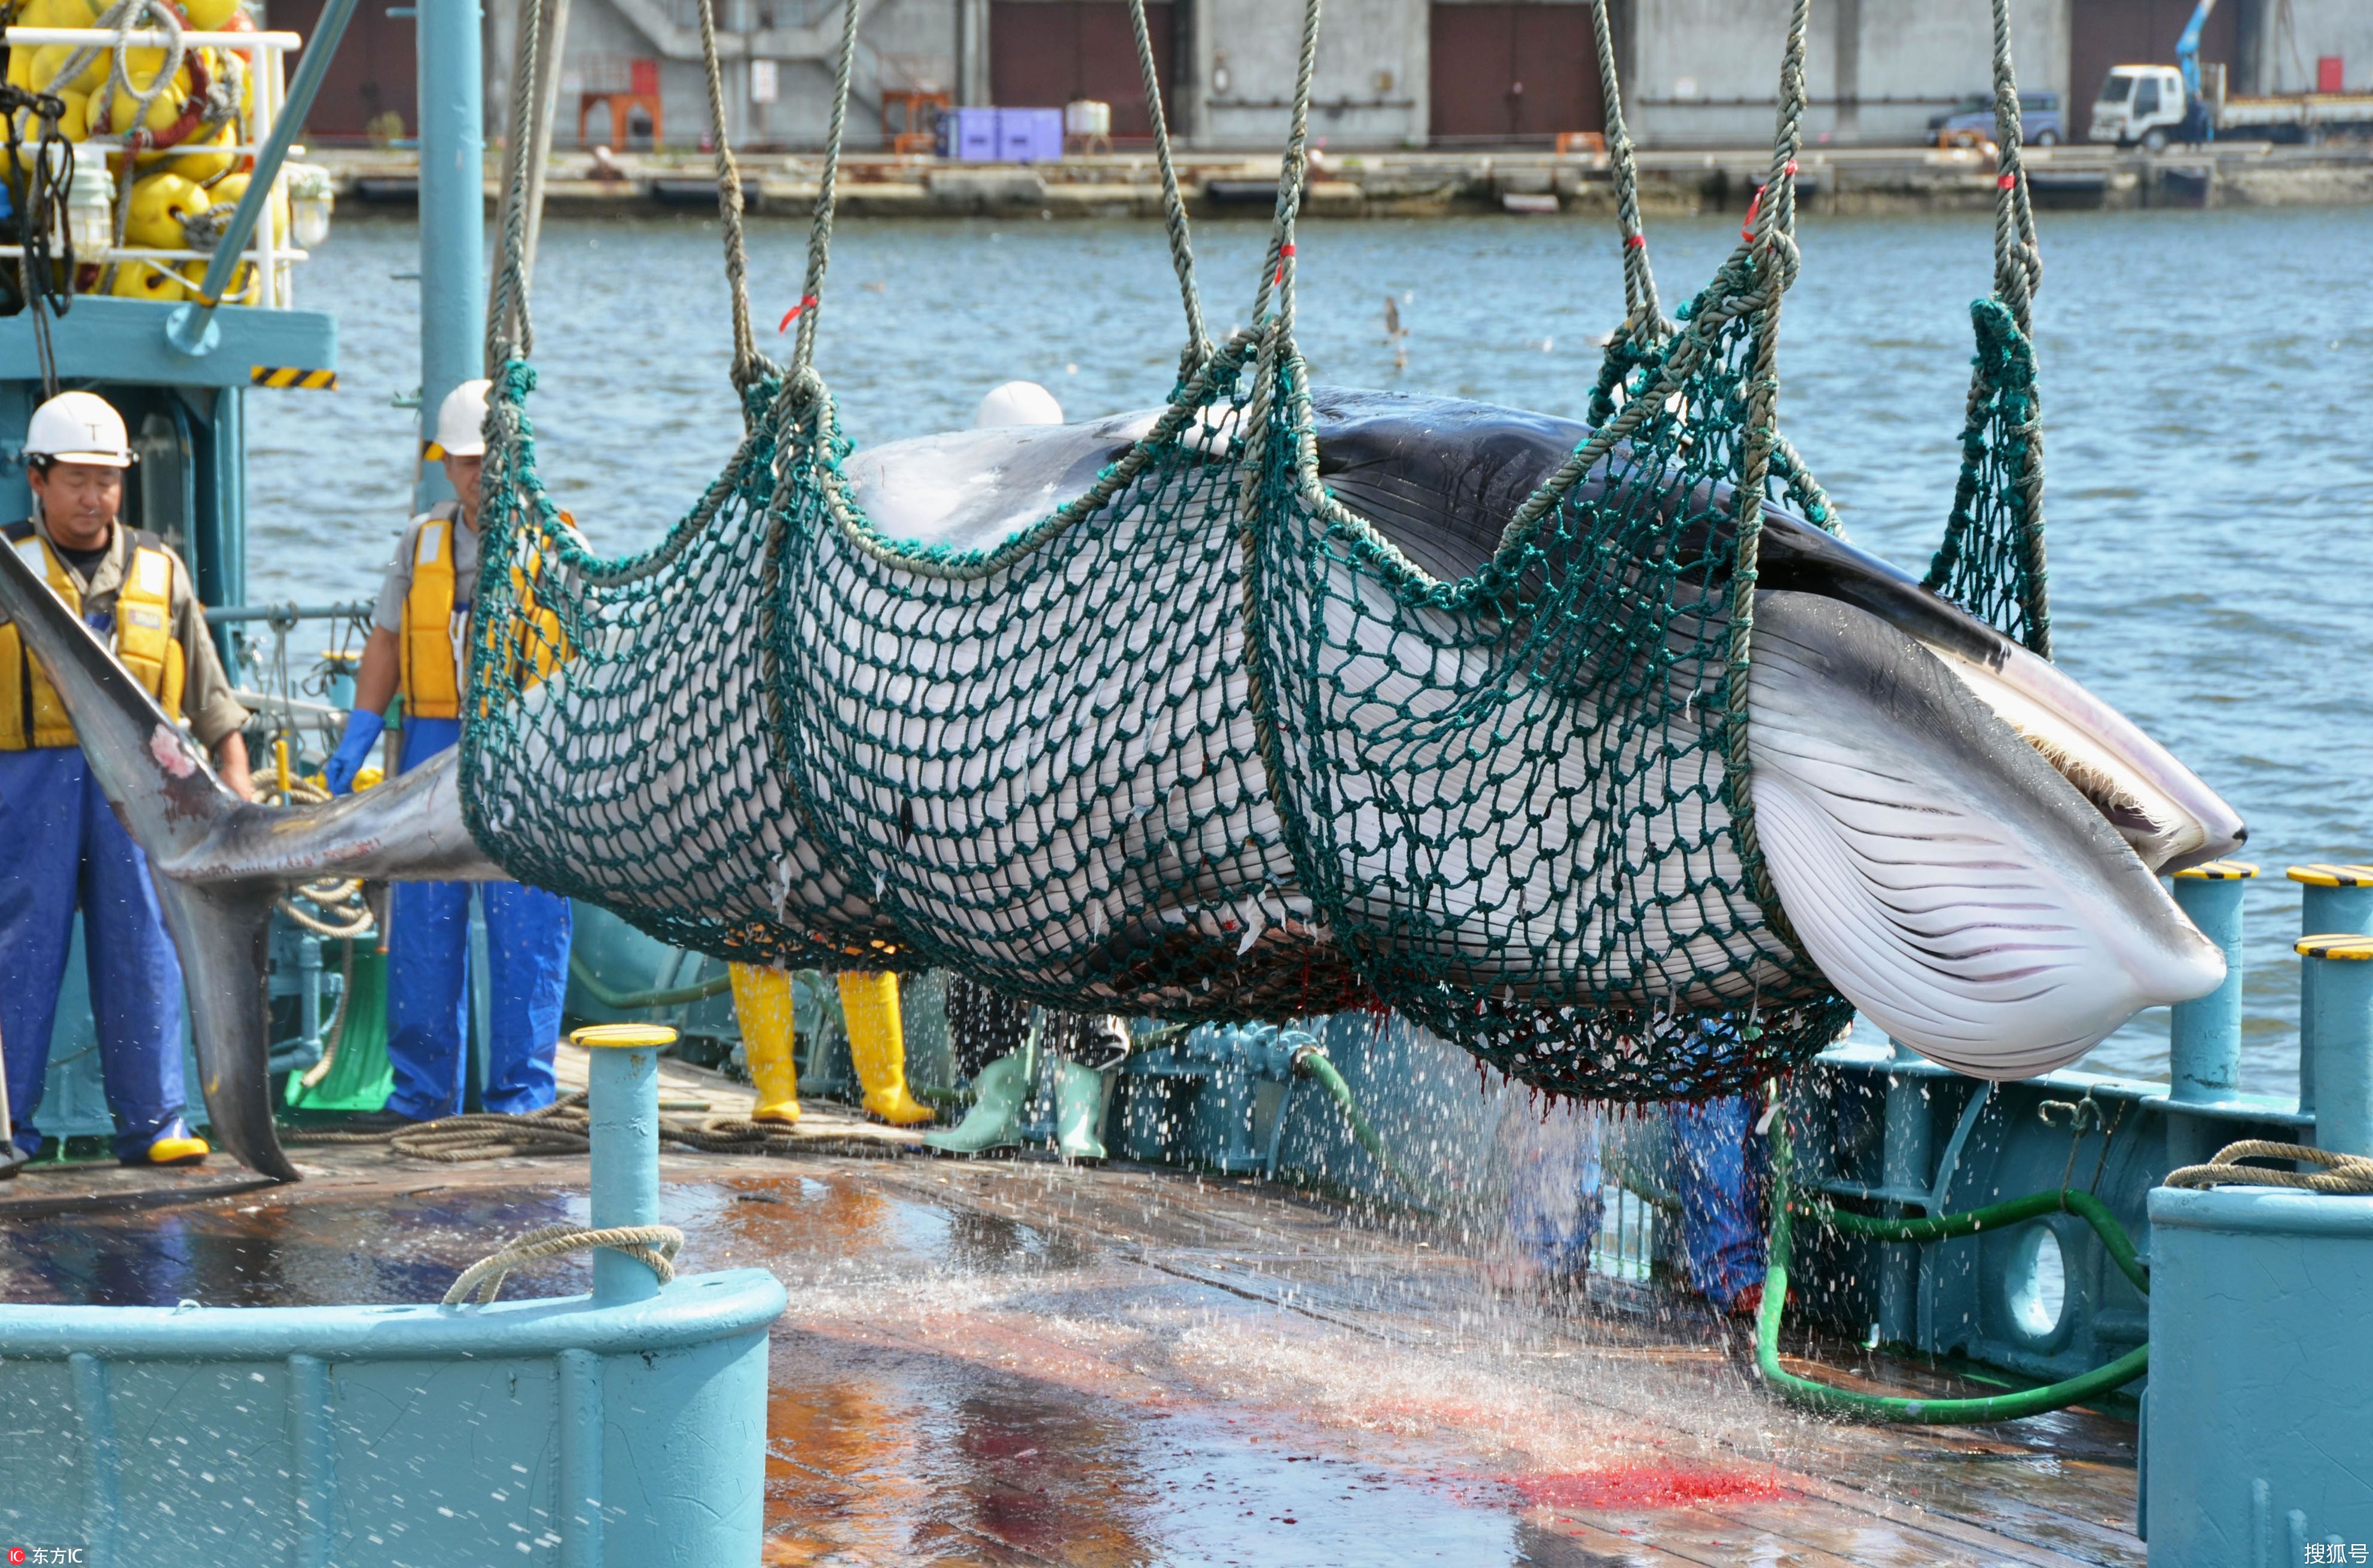 残忍传统何以称作文化 日本人的捕鲸情结